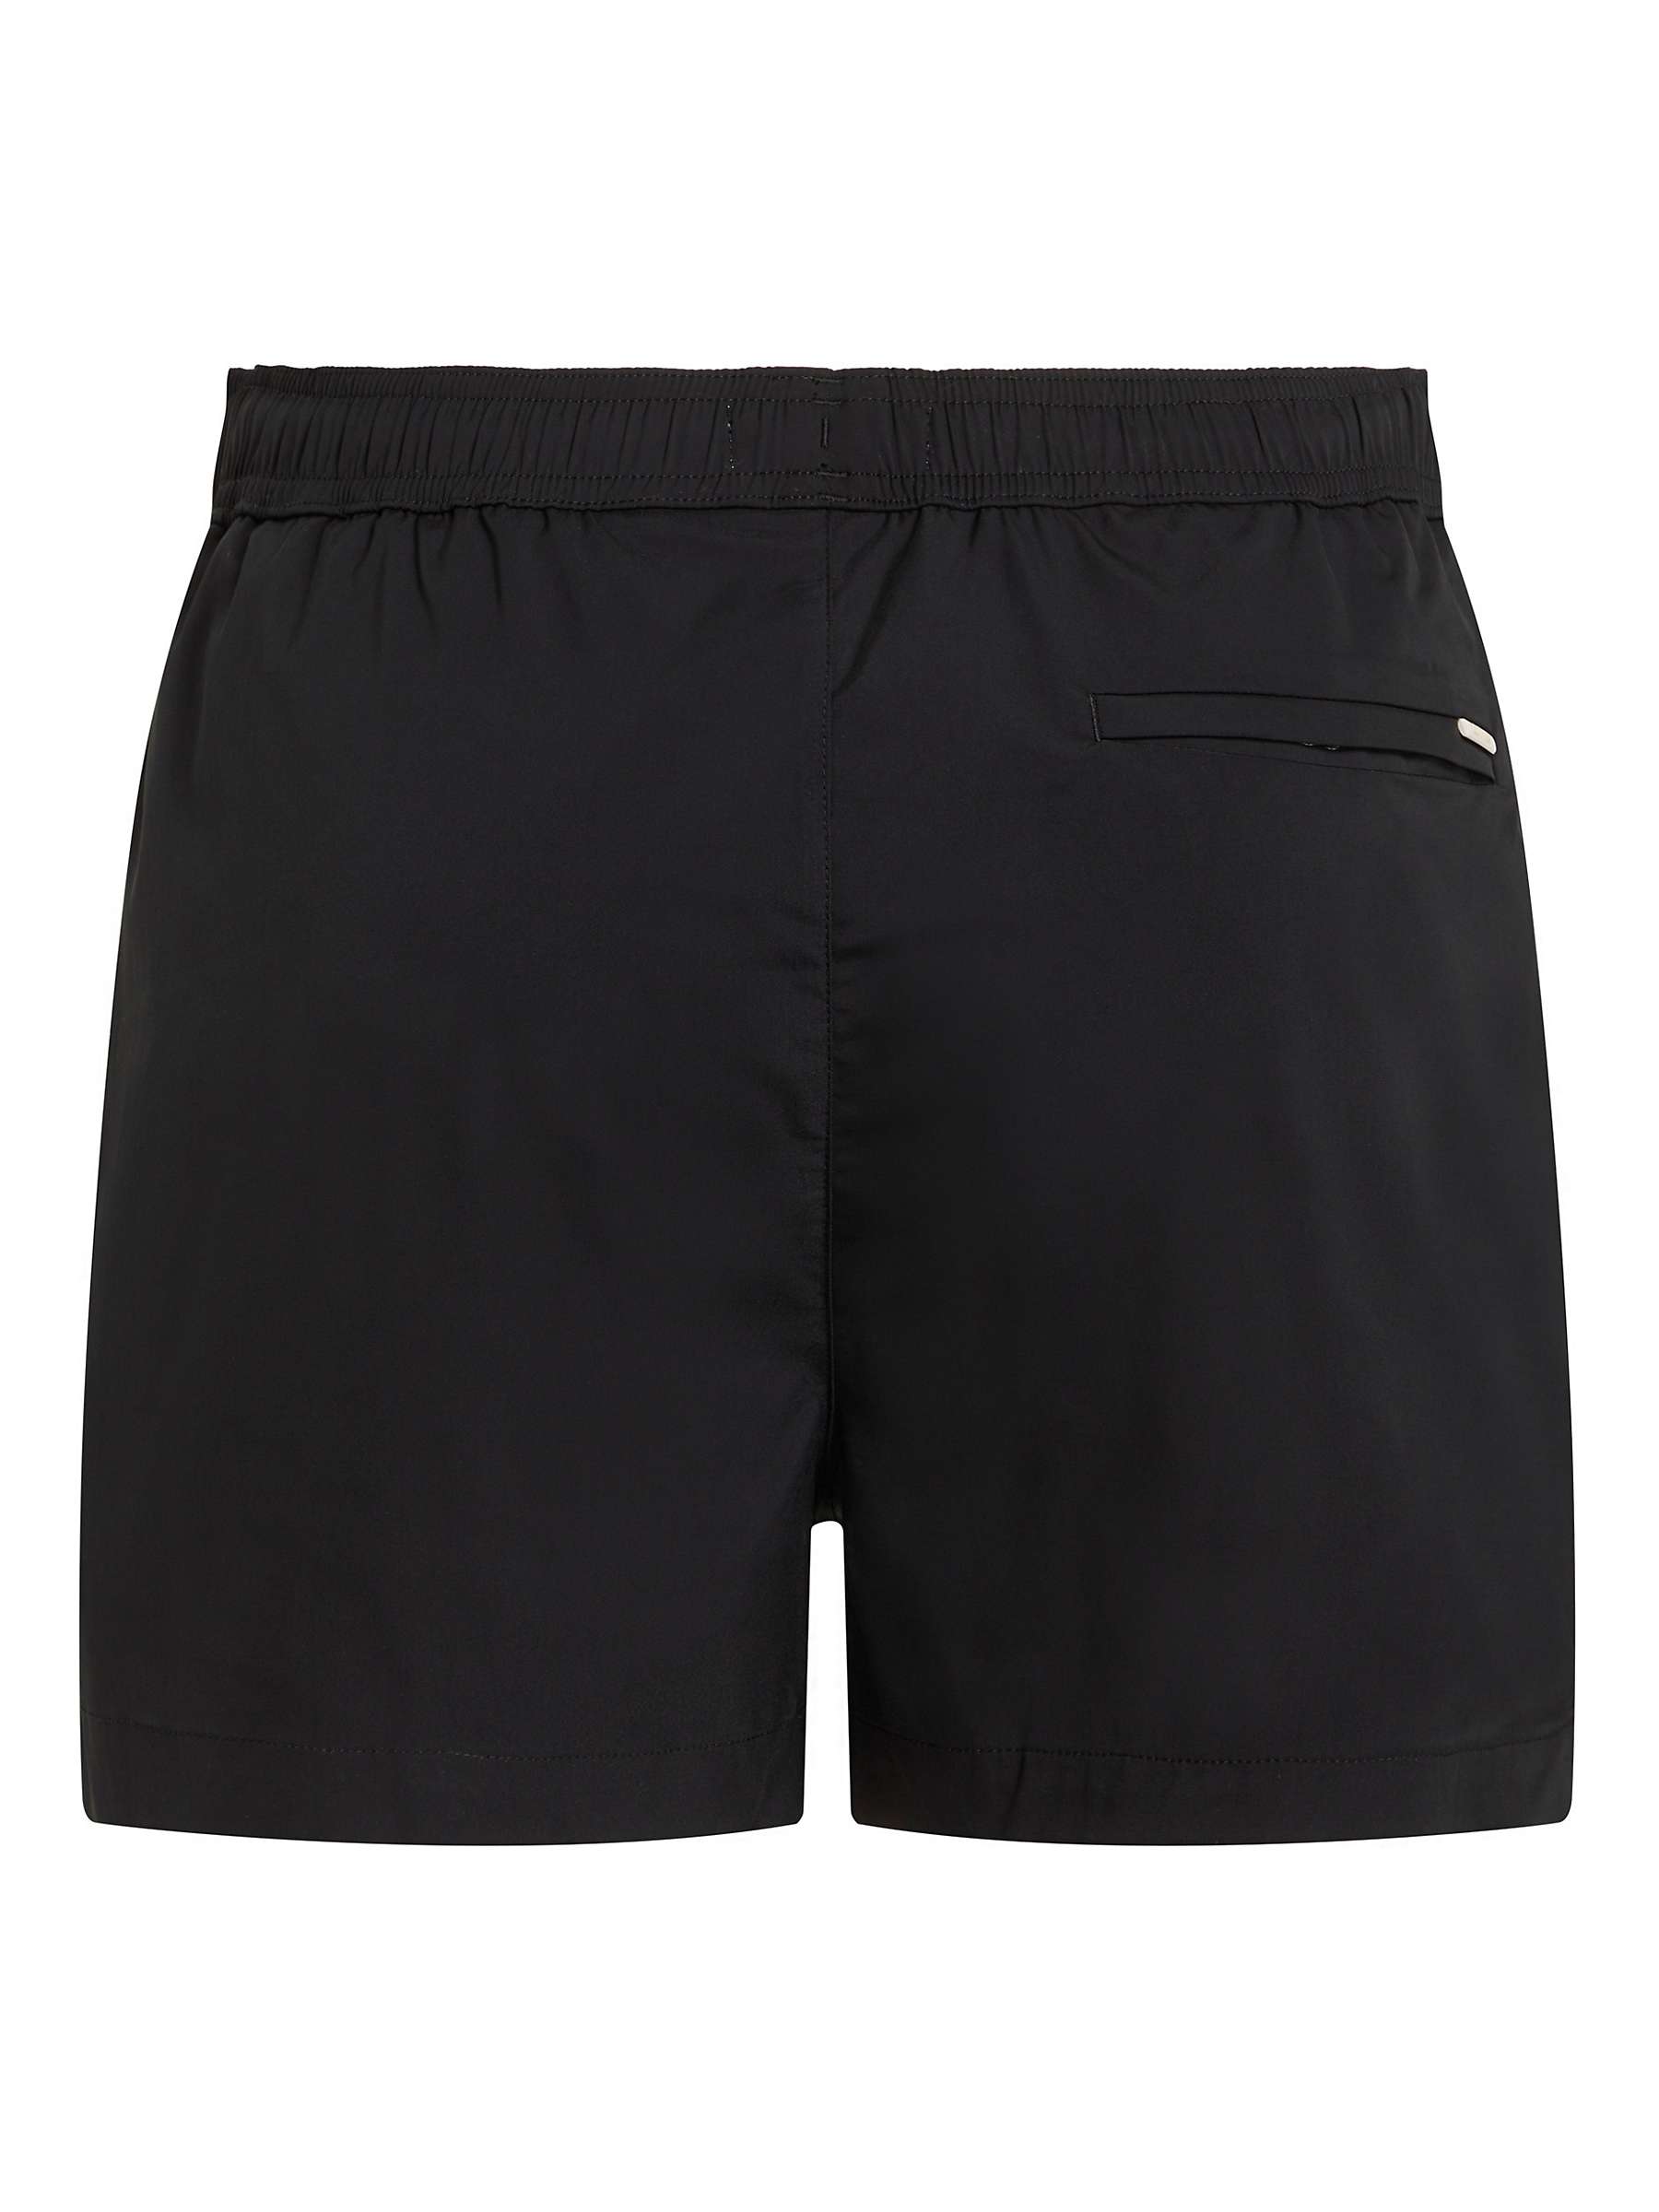 Buy Calvin Klein Logo Drawstring Swim Shorts, Black Online at johnlewis.com